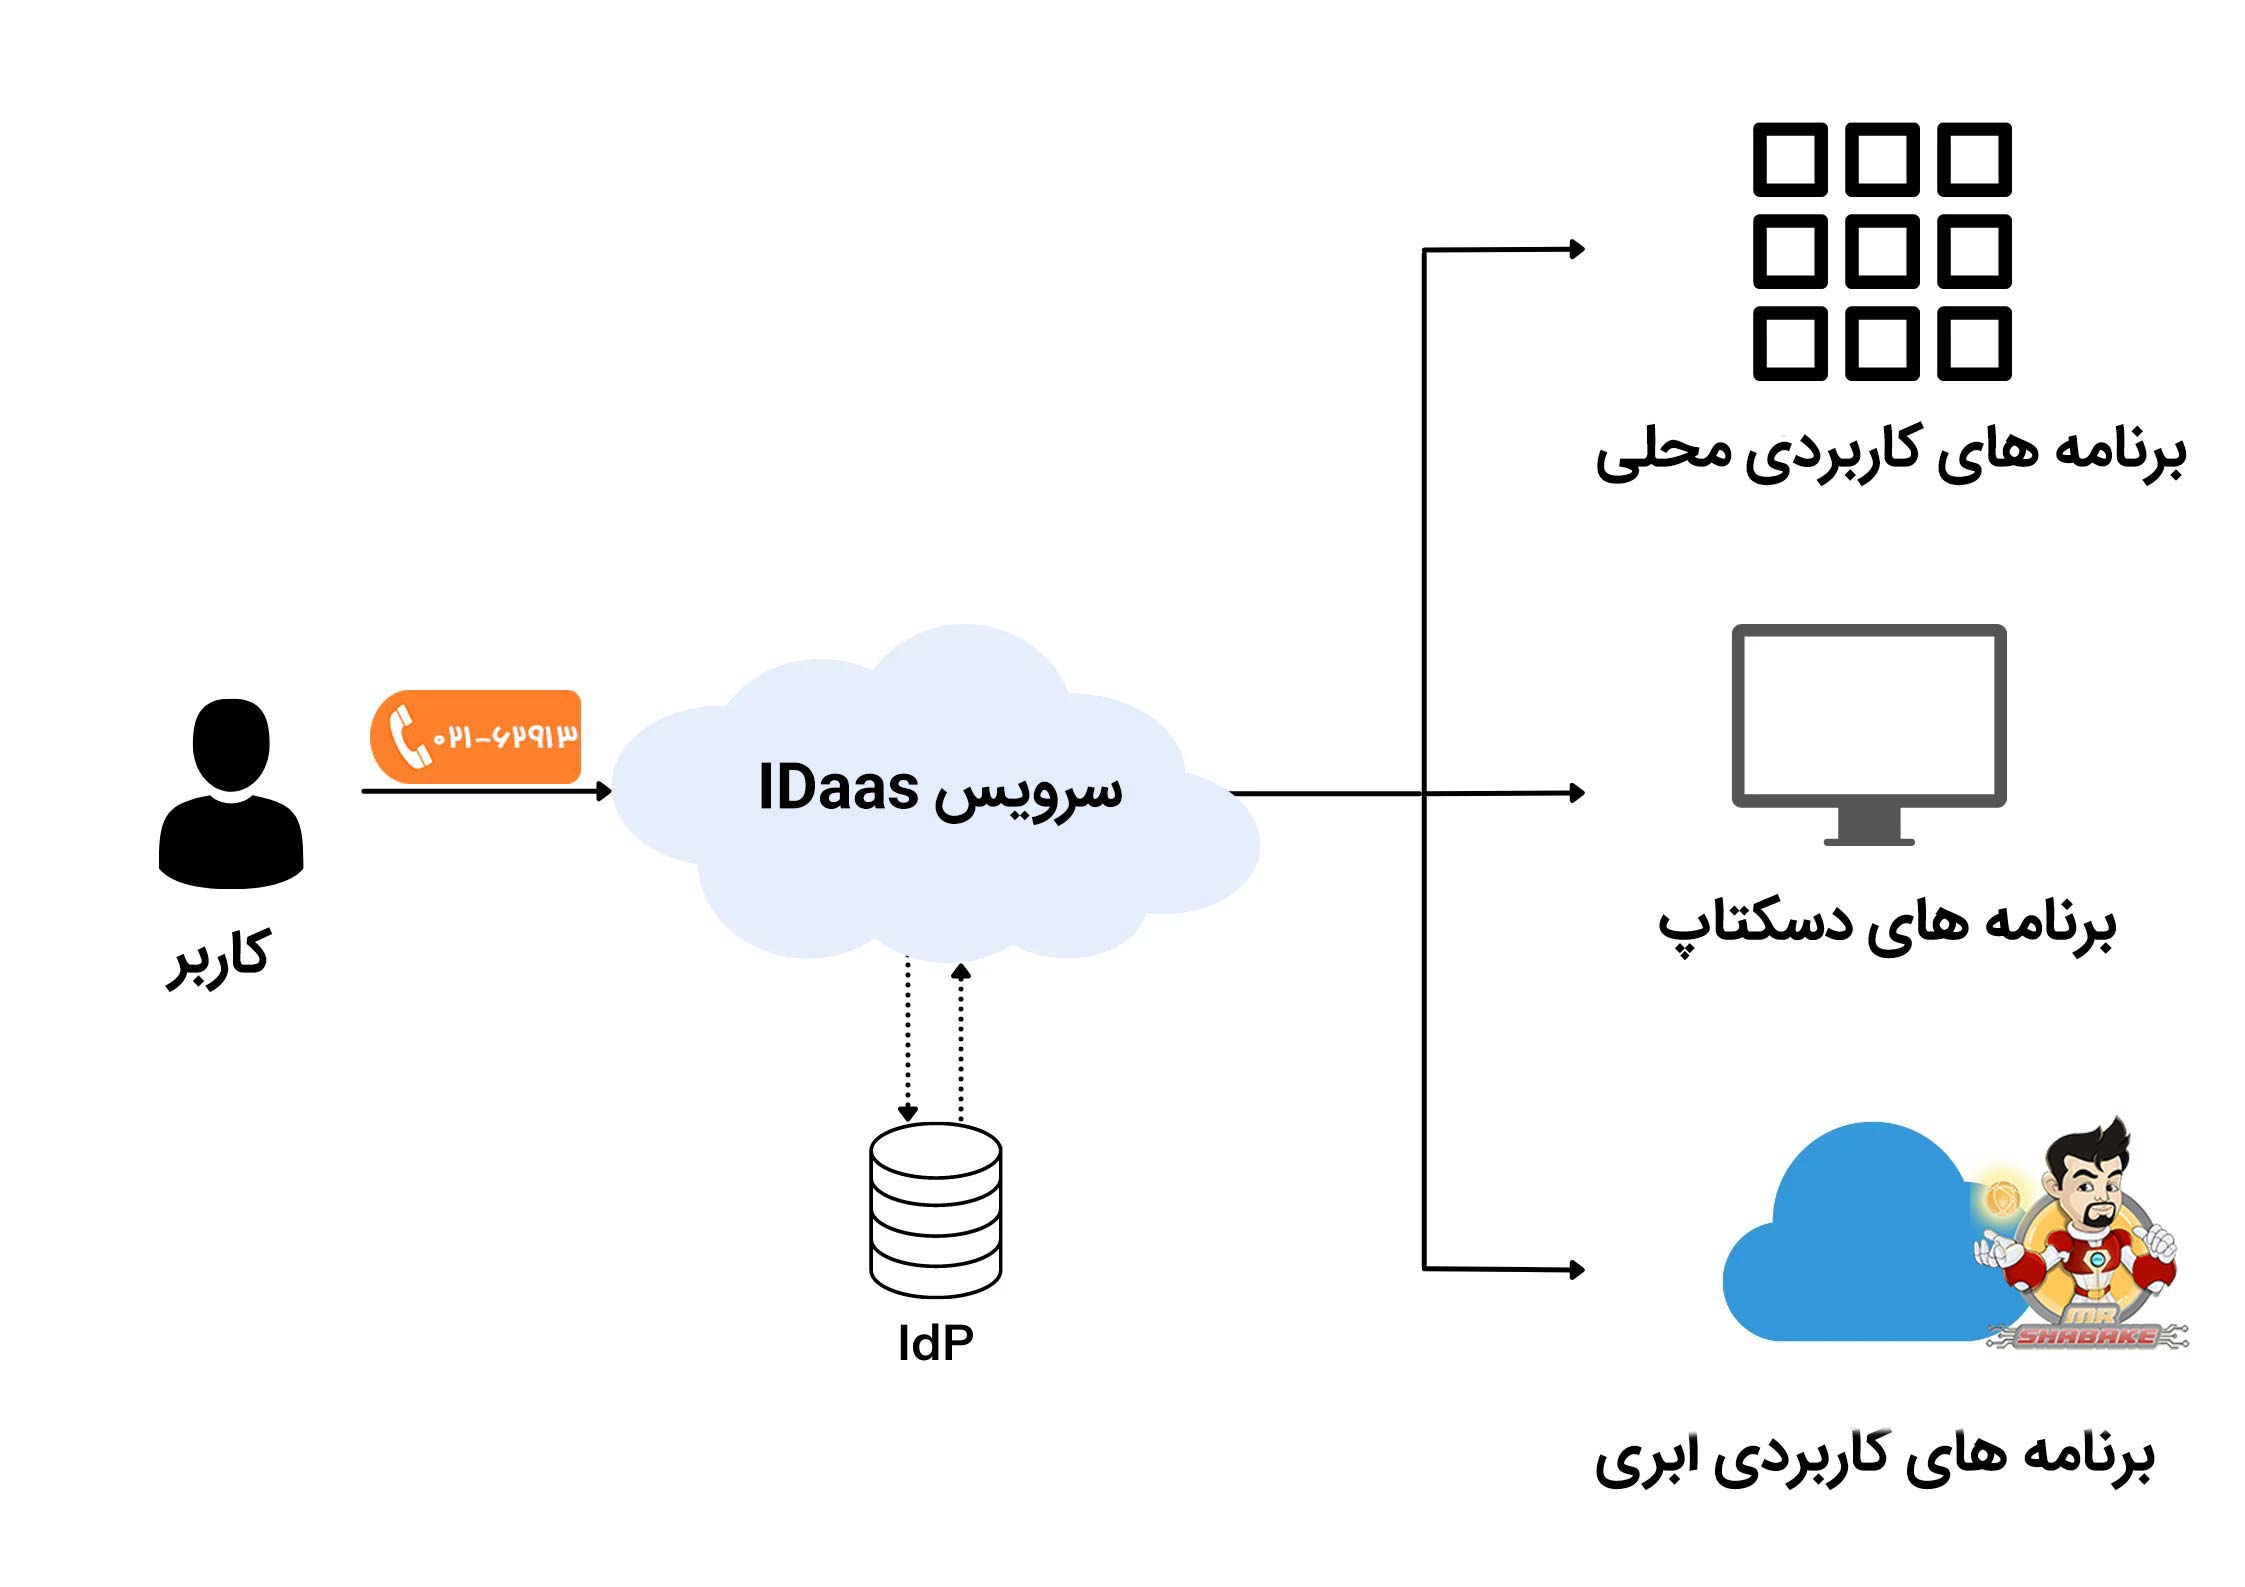 سرویس IDaas چیست و چه کاربردی دارد